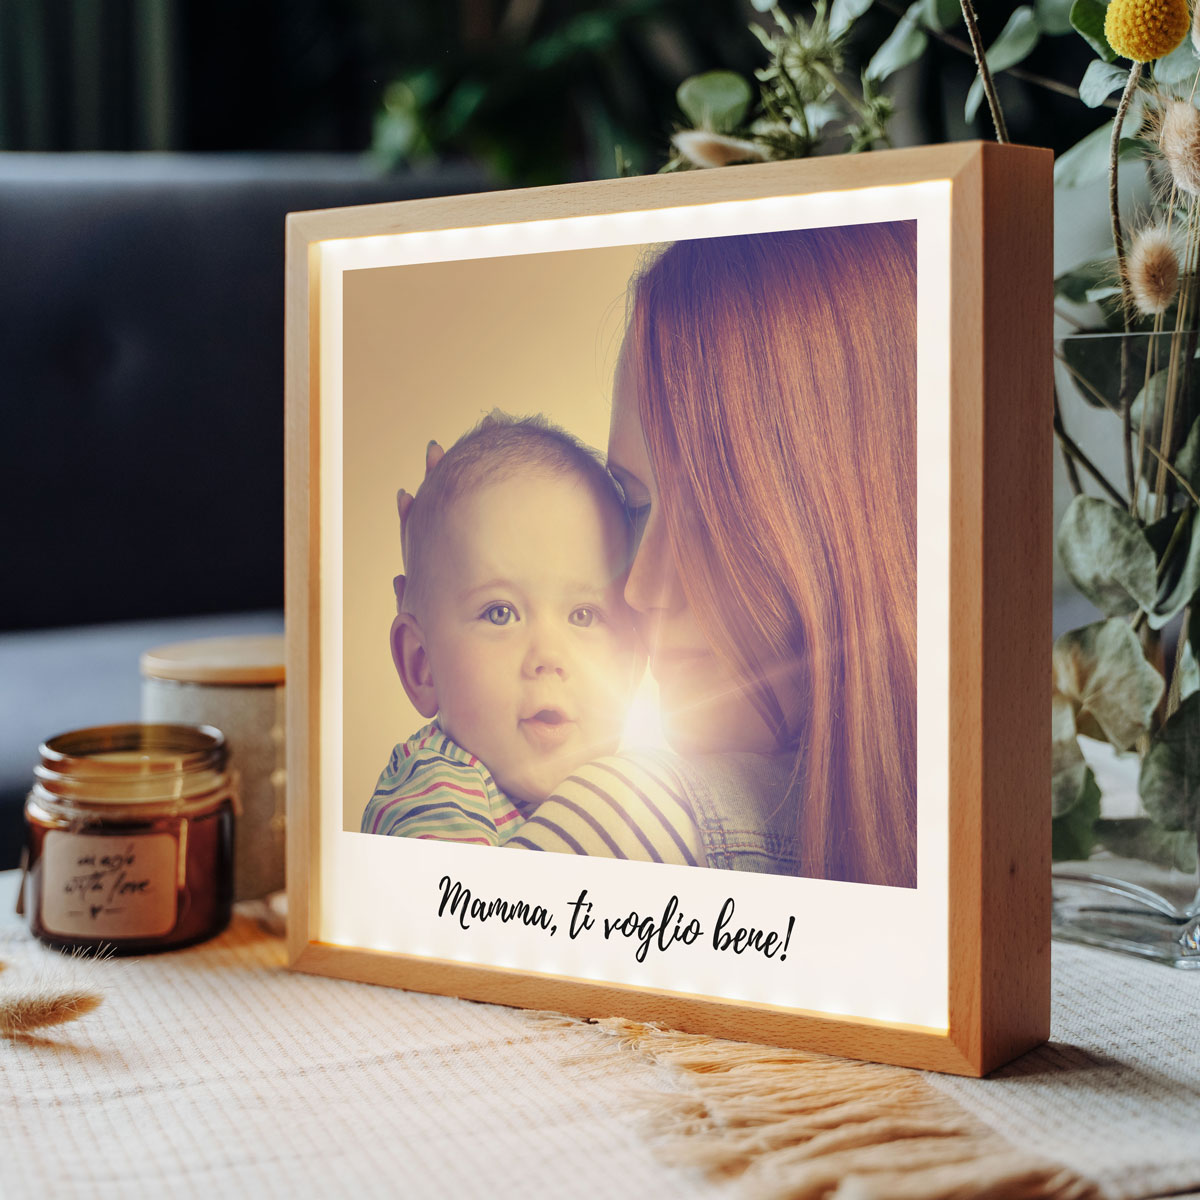 regali per la mamma light box personalizzata in stile polaroid